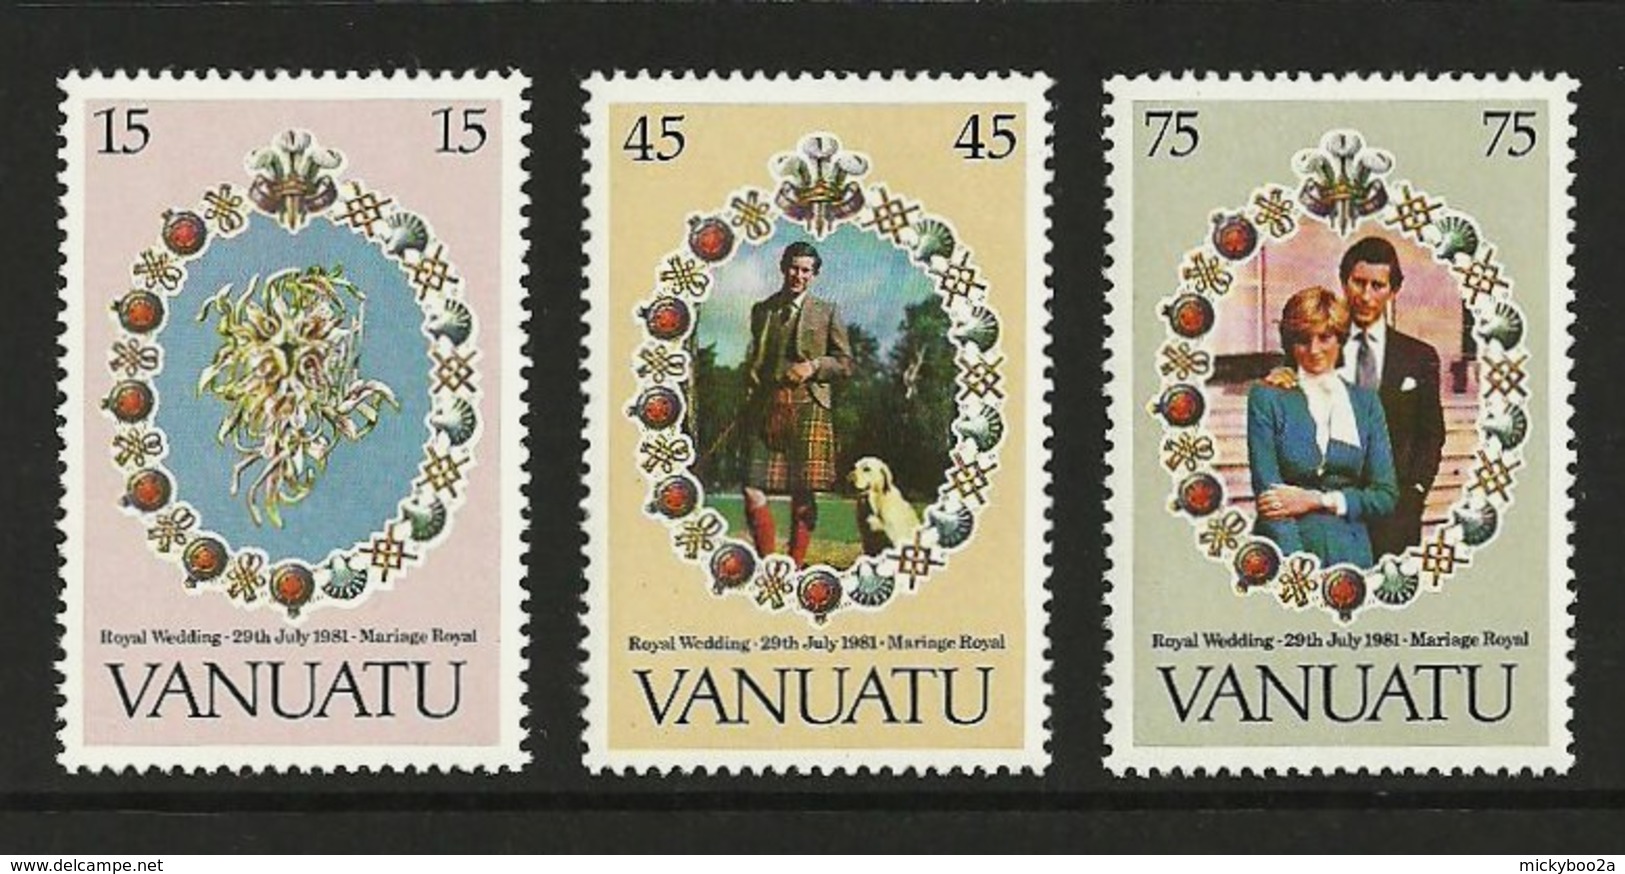 VANUATU 1981 ROYALTY ROYAL WEDDING CHARLES & DIANA SET MNH - Vanuatu (1980-...)